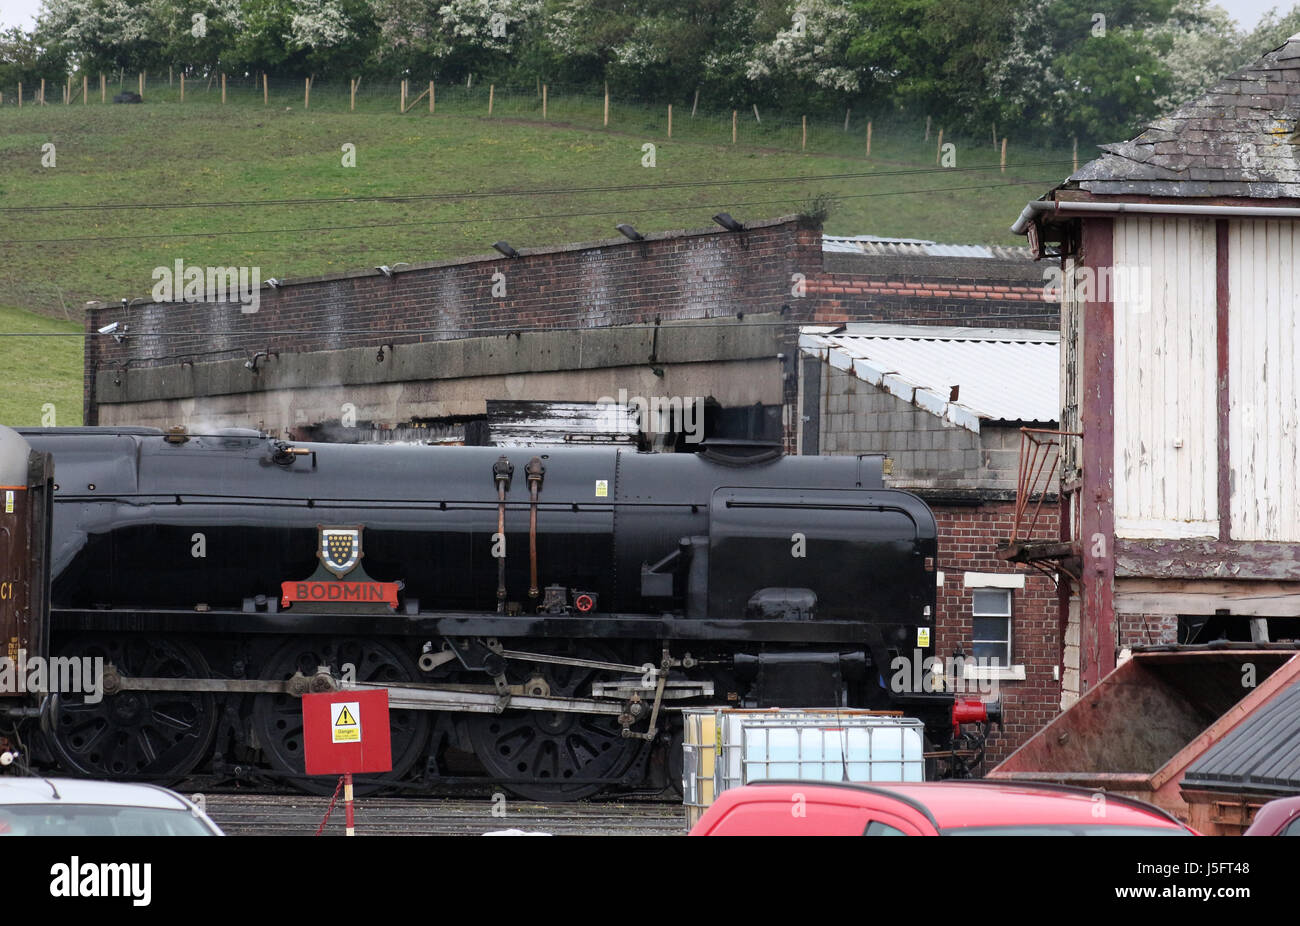 La regione meridionale della Marina Mercantile classe locomotiva a vapore India britannica linea, portando la targhetta Bodmin ritorna su capannone a Carnforth, Lancashire. Foto Stock